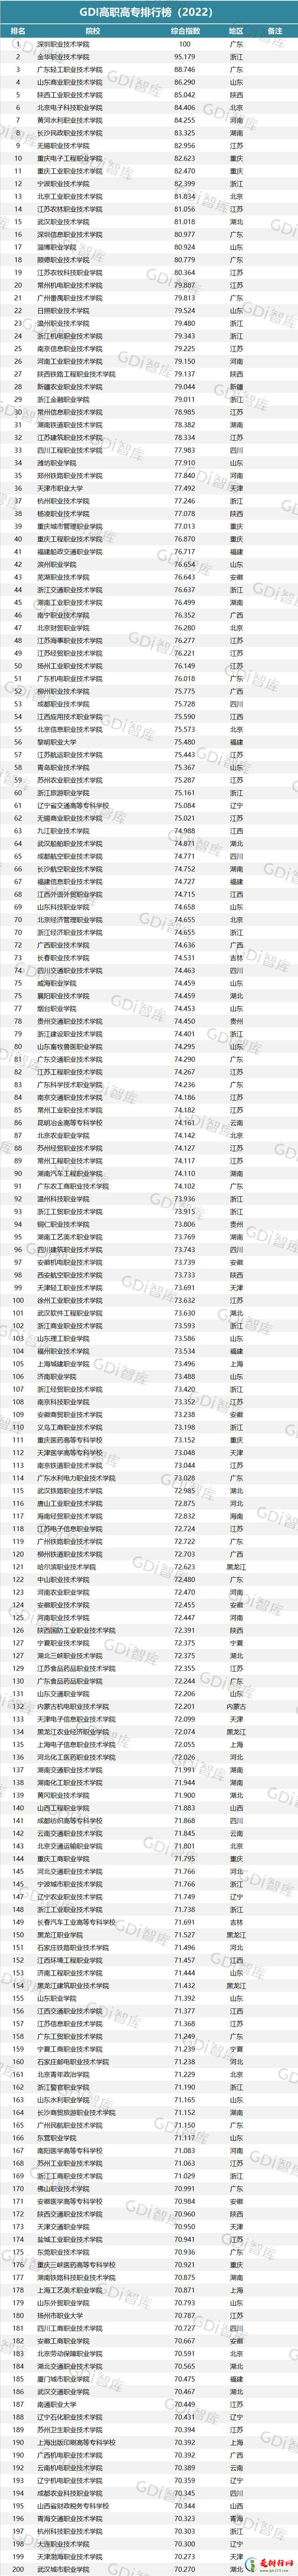 2022GDI高职高专排行榜 中国高职高专学校排行榜